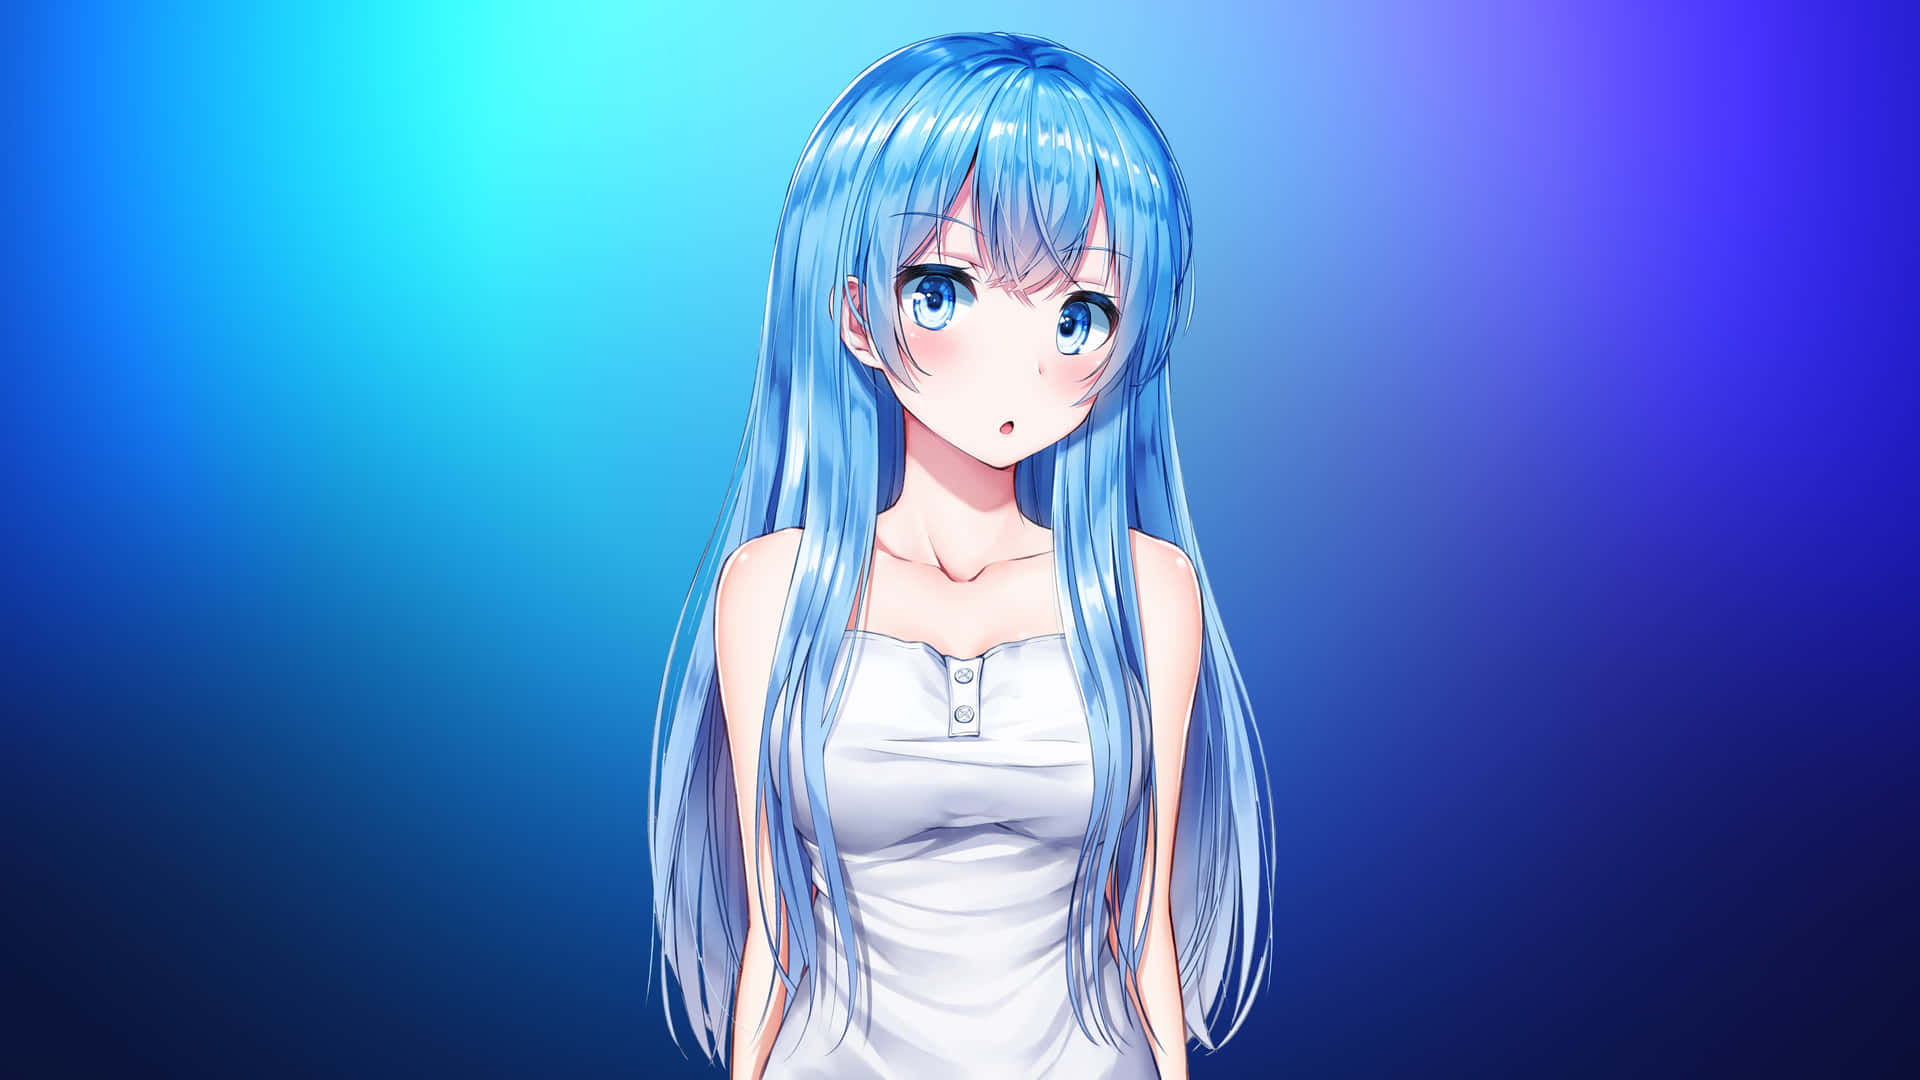 Imagende Perfil De Chica De Anime Azul